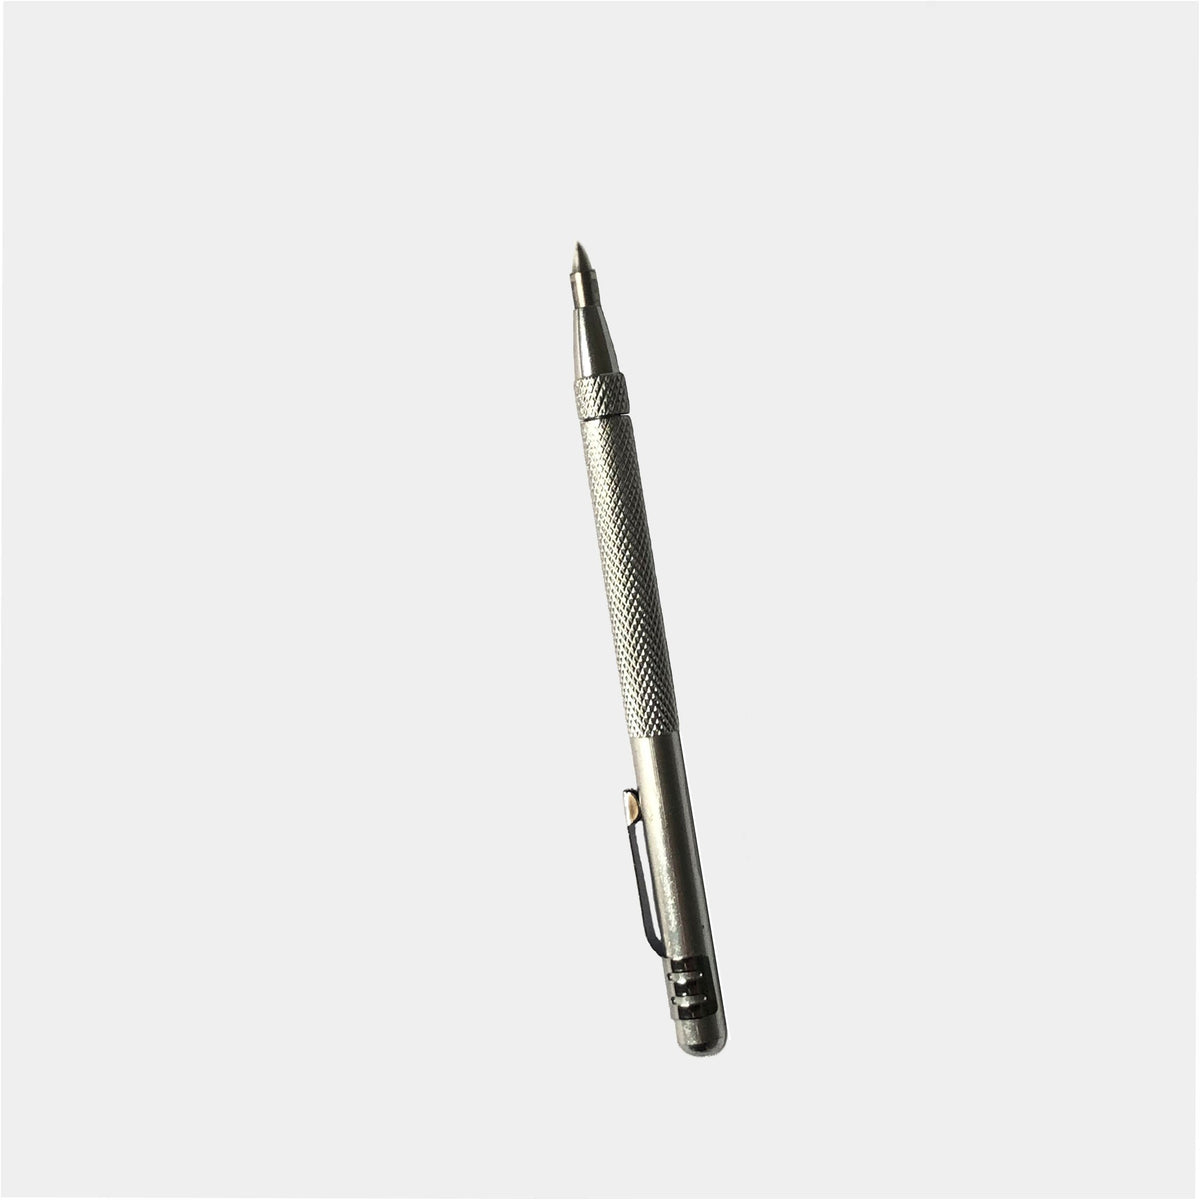 Carbide Tip Scribe Pen